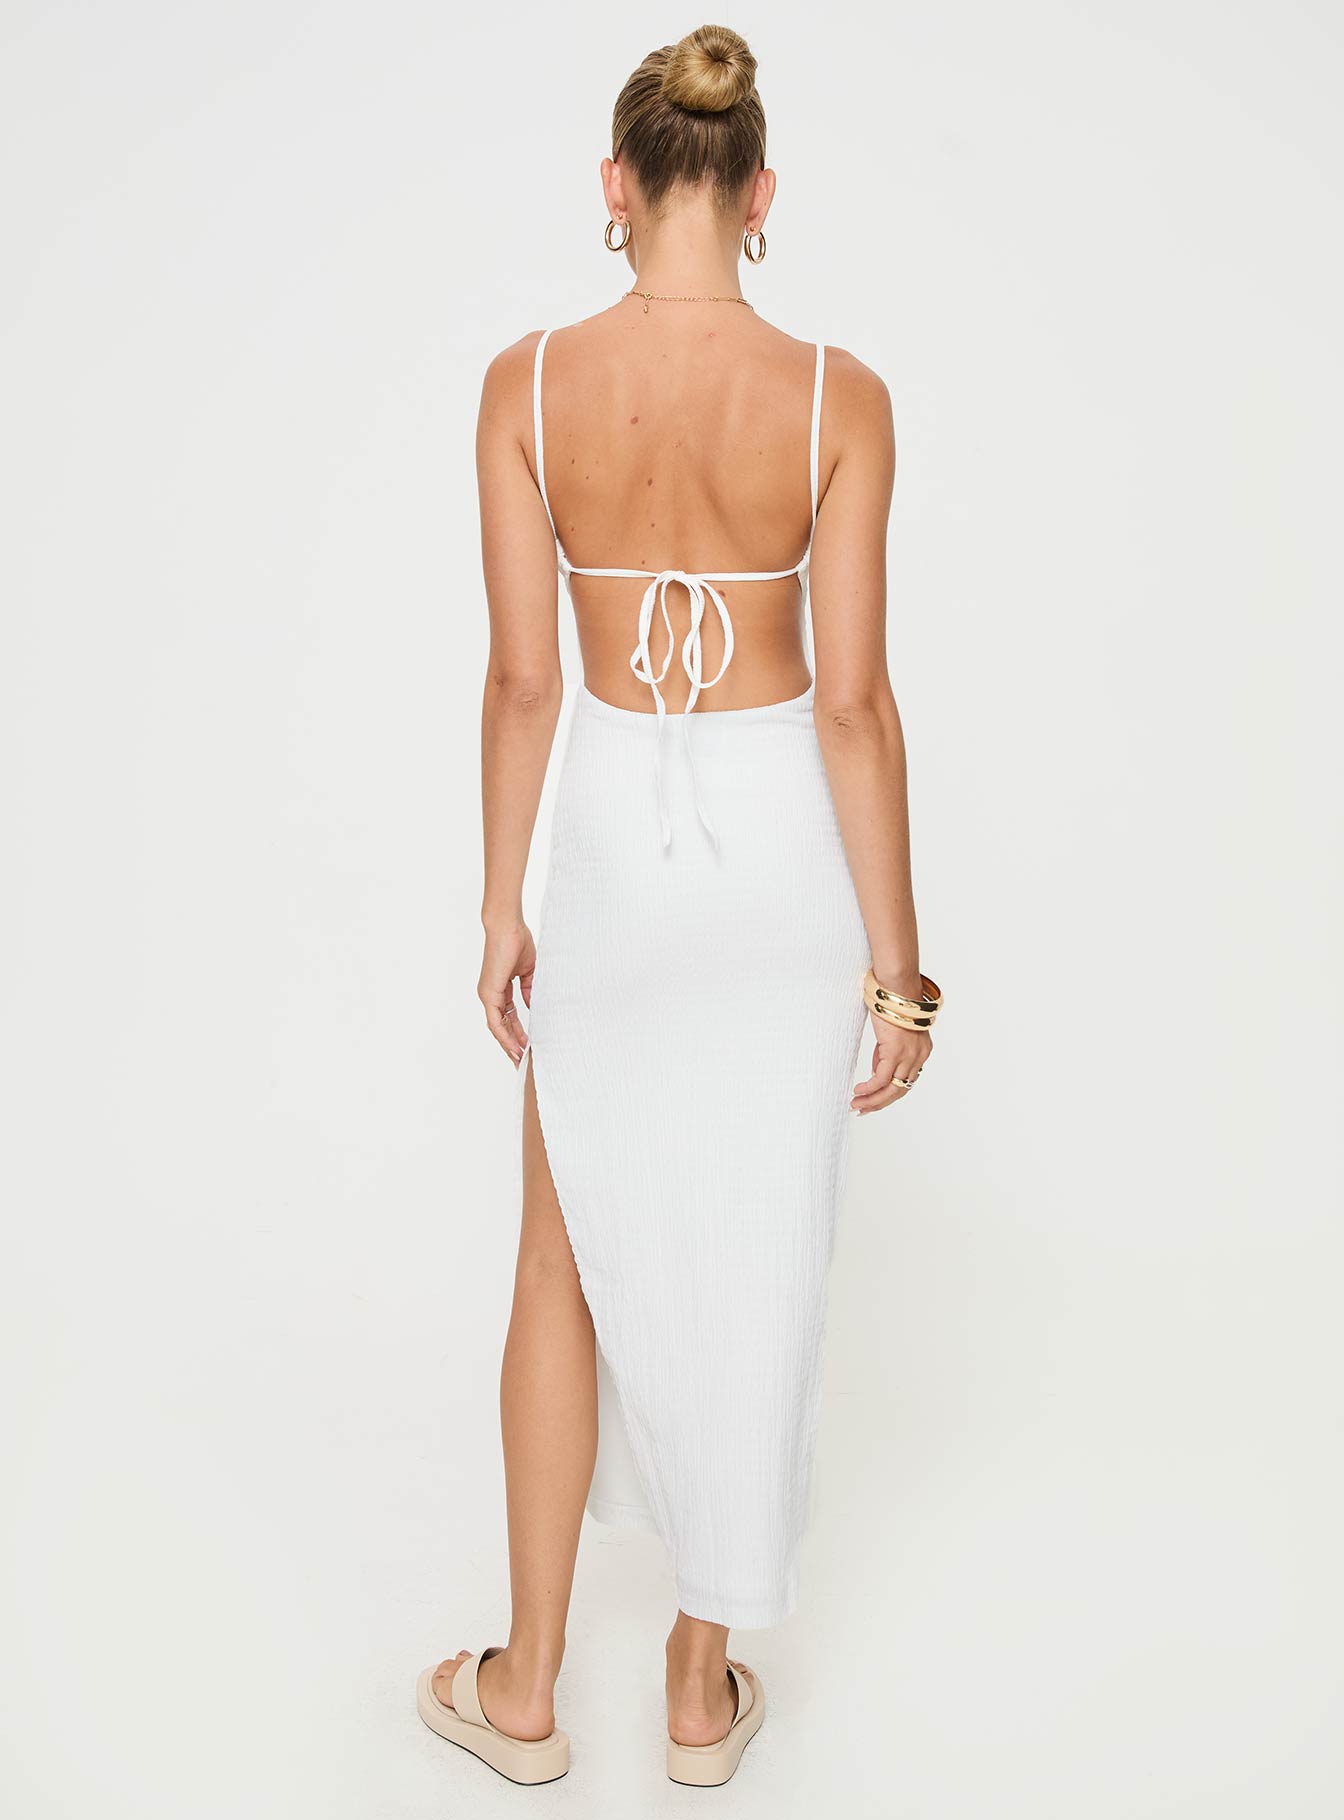 Shop Formal Dress - Elestria Maxi Dress White secondary image